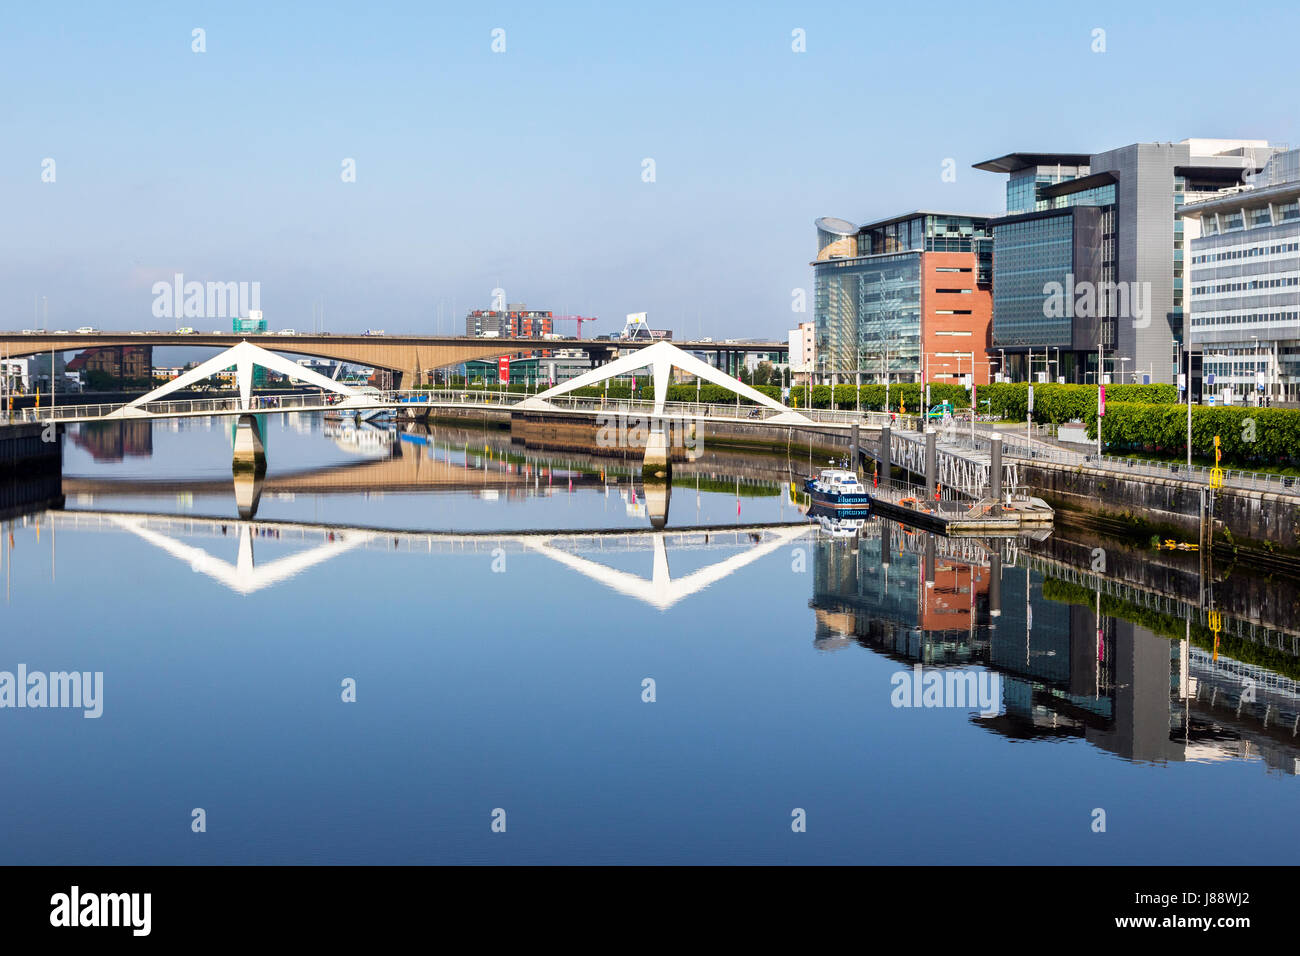 Broomielaw, Glasgow mit der Wirtschaft, Banken und Handel Bezirk entlang des Flusses Clyde in Richtung der Tradeston Brücke, bekannt als die Sq anzeigen Stockfoto